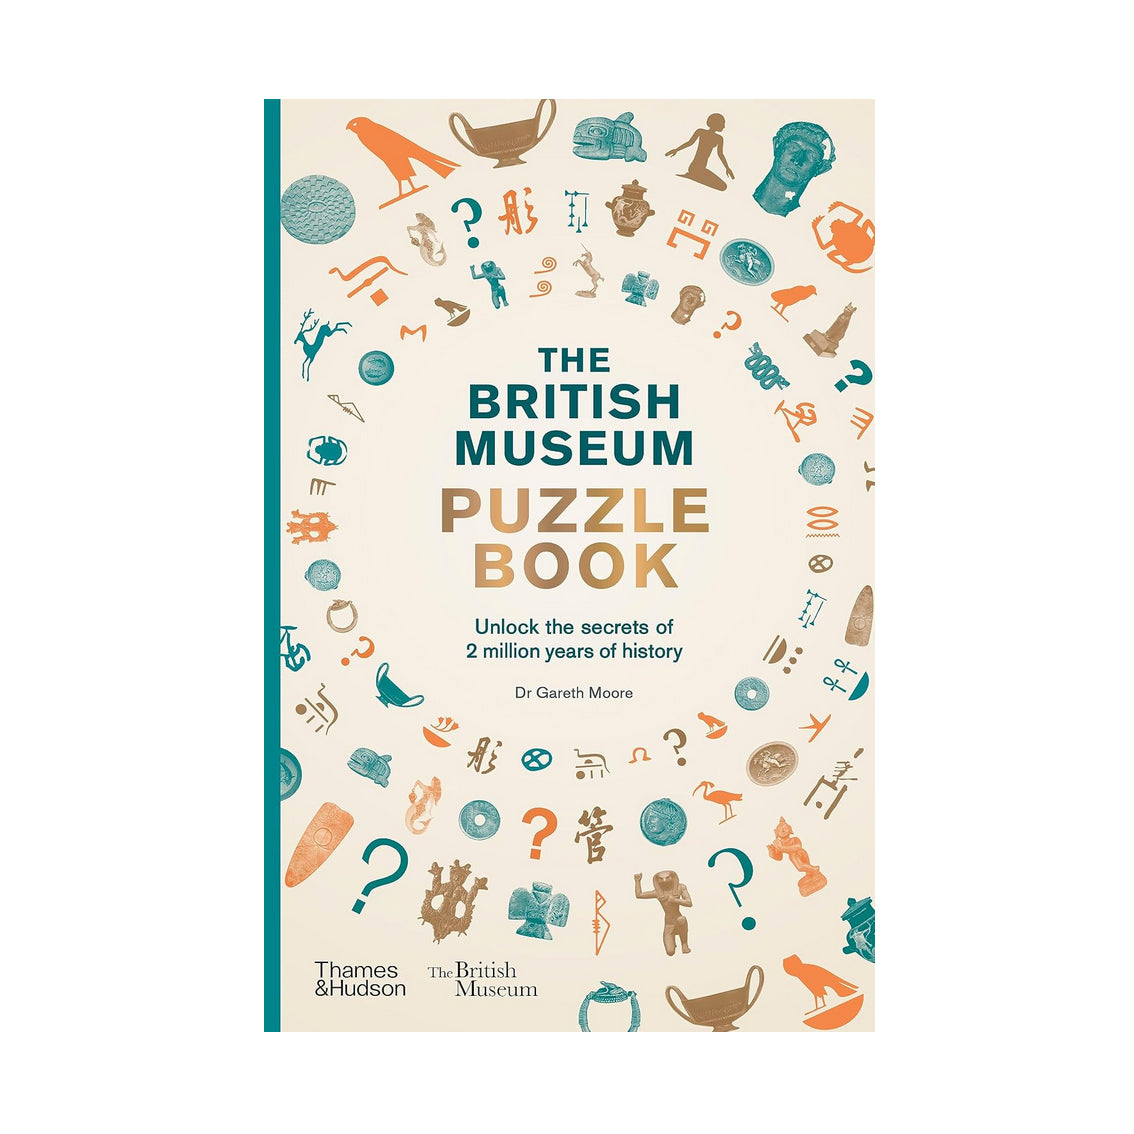 The British Museum Puzzle Book